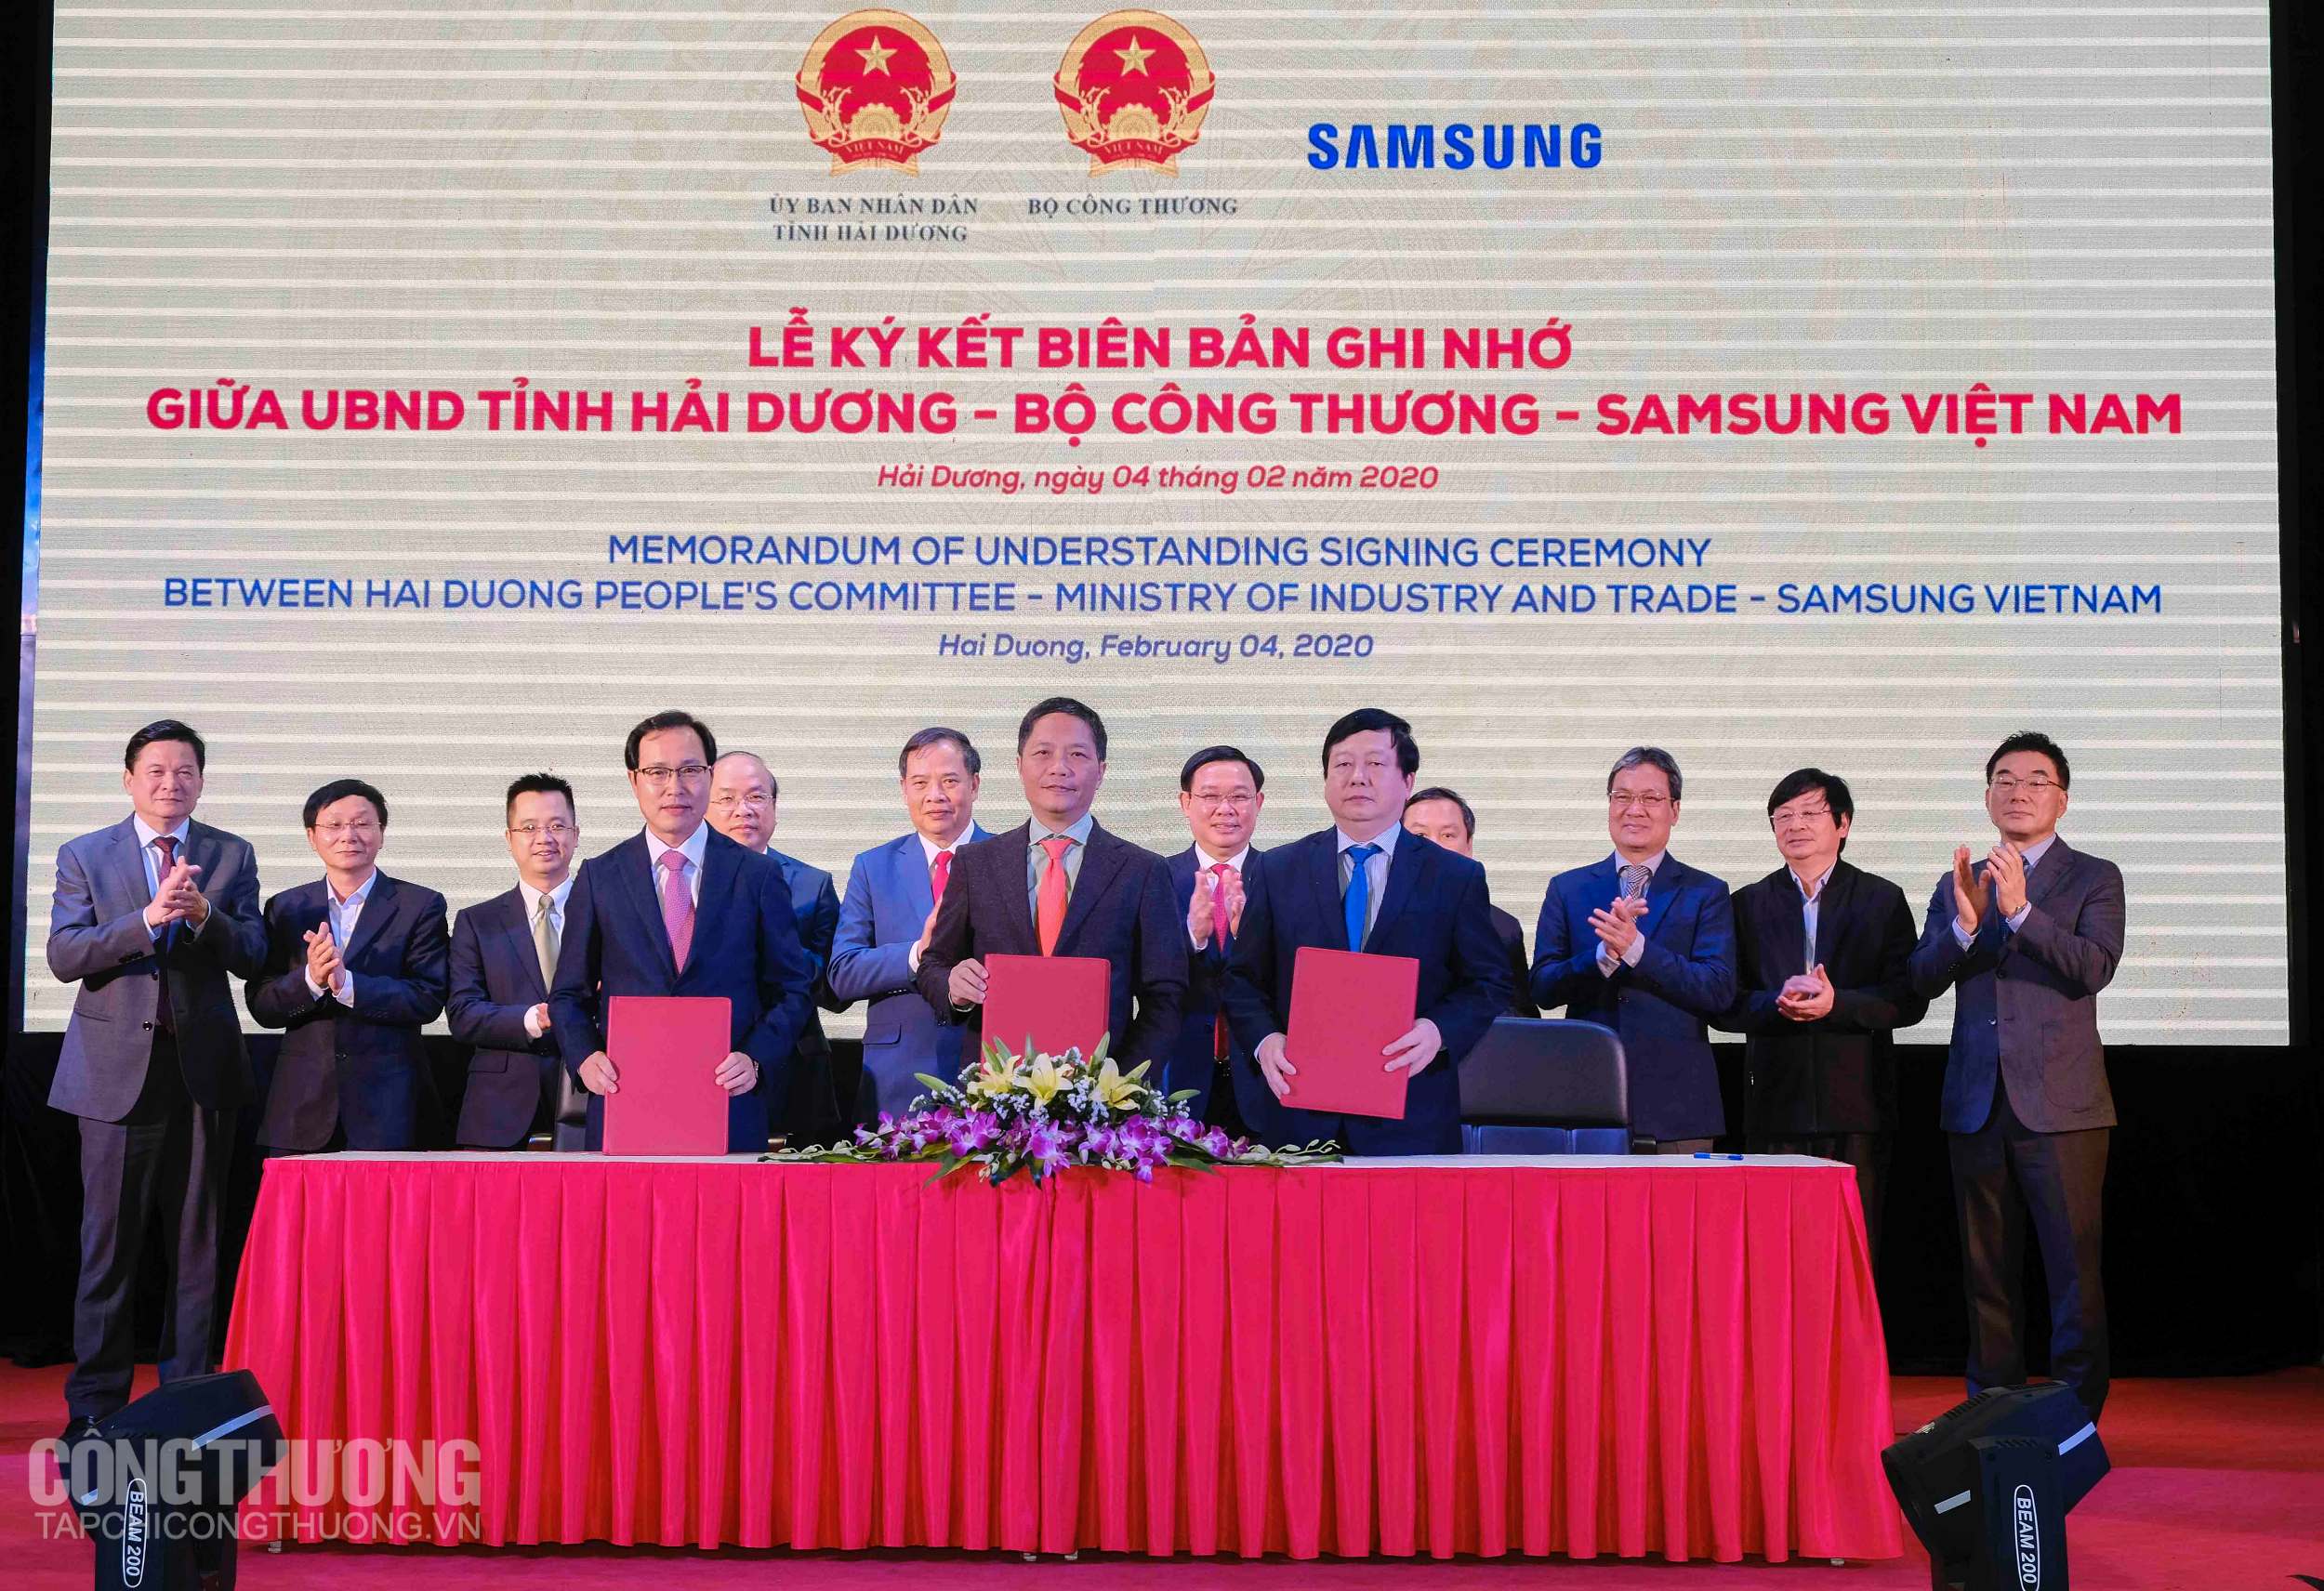 Phó Thủ tướng Vương Đình Huệ chứng kiến Lễ ký kết Biên bản ghi nhớ ba bên giữa Bộ Công Thương, Samsung Việt Nam và UBND tỉnh Hải Dương